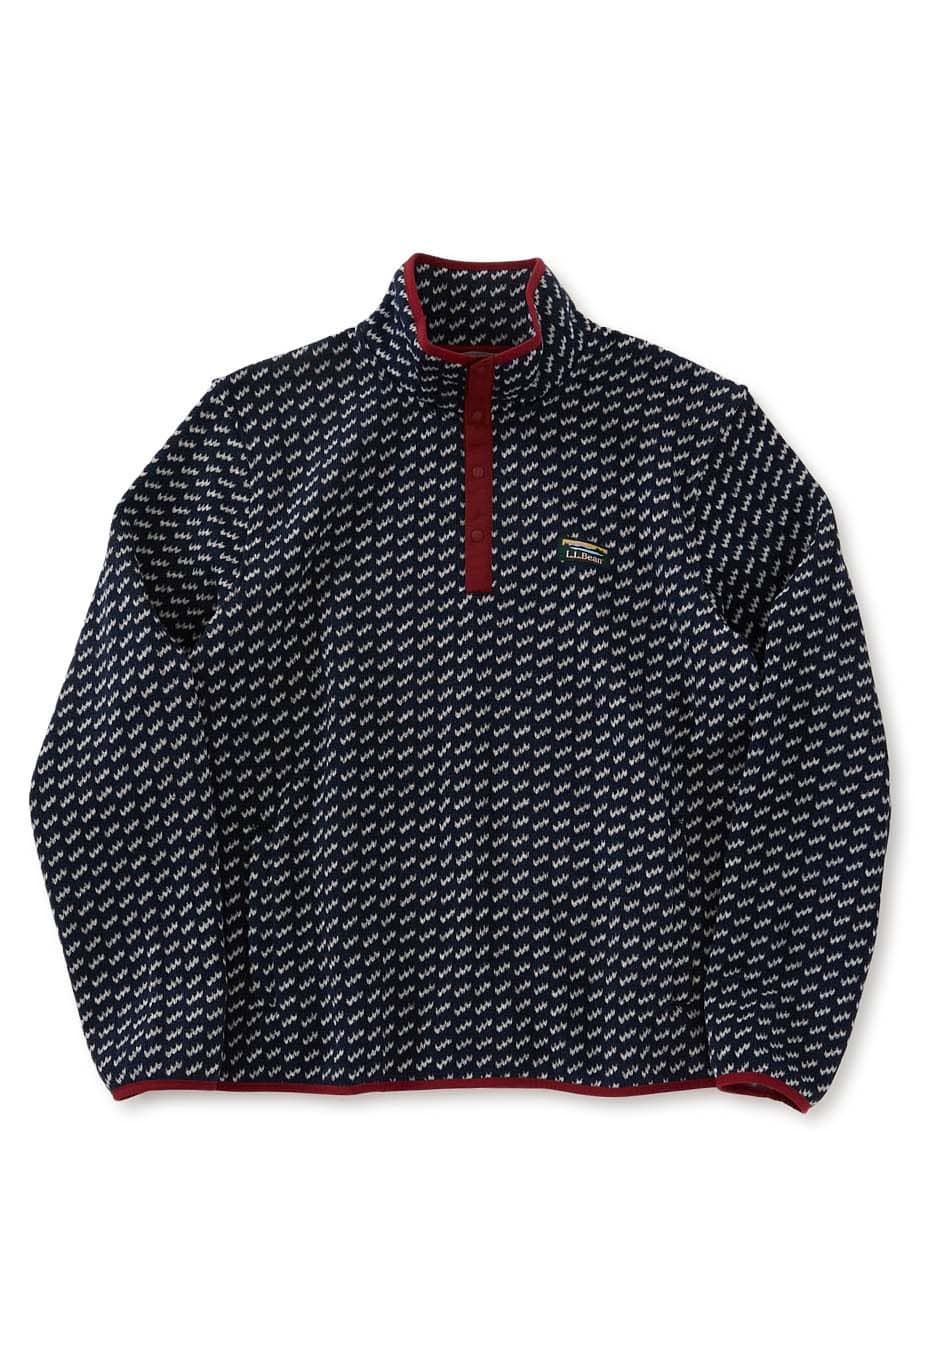 LLBEAN 500682 BEANS sweater fleece pullover